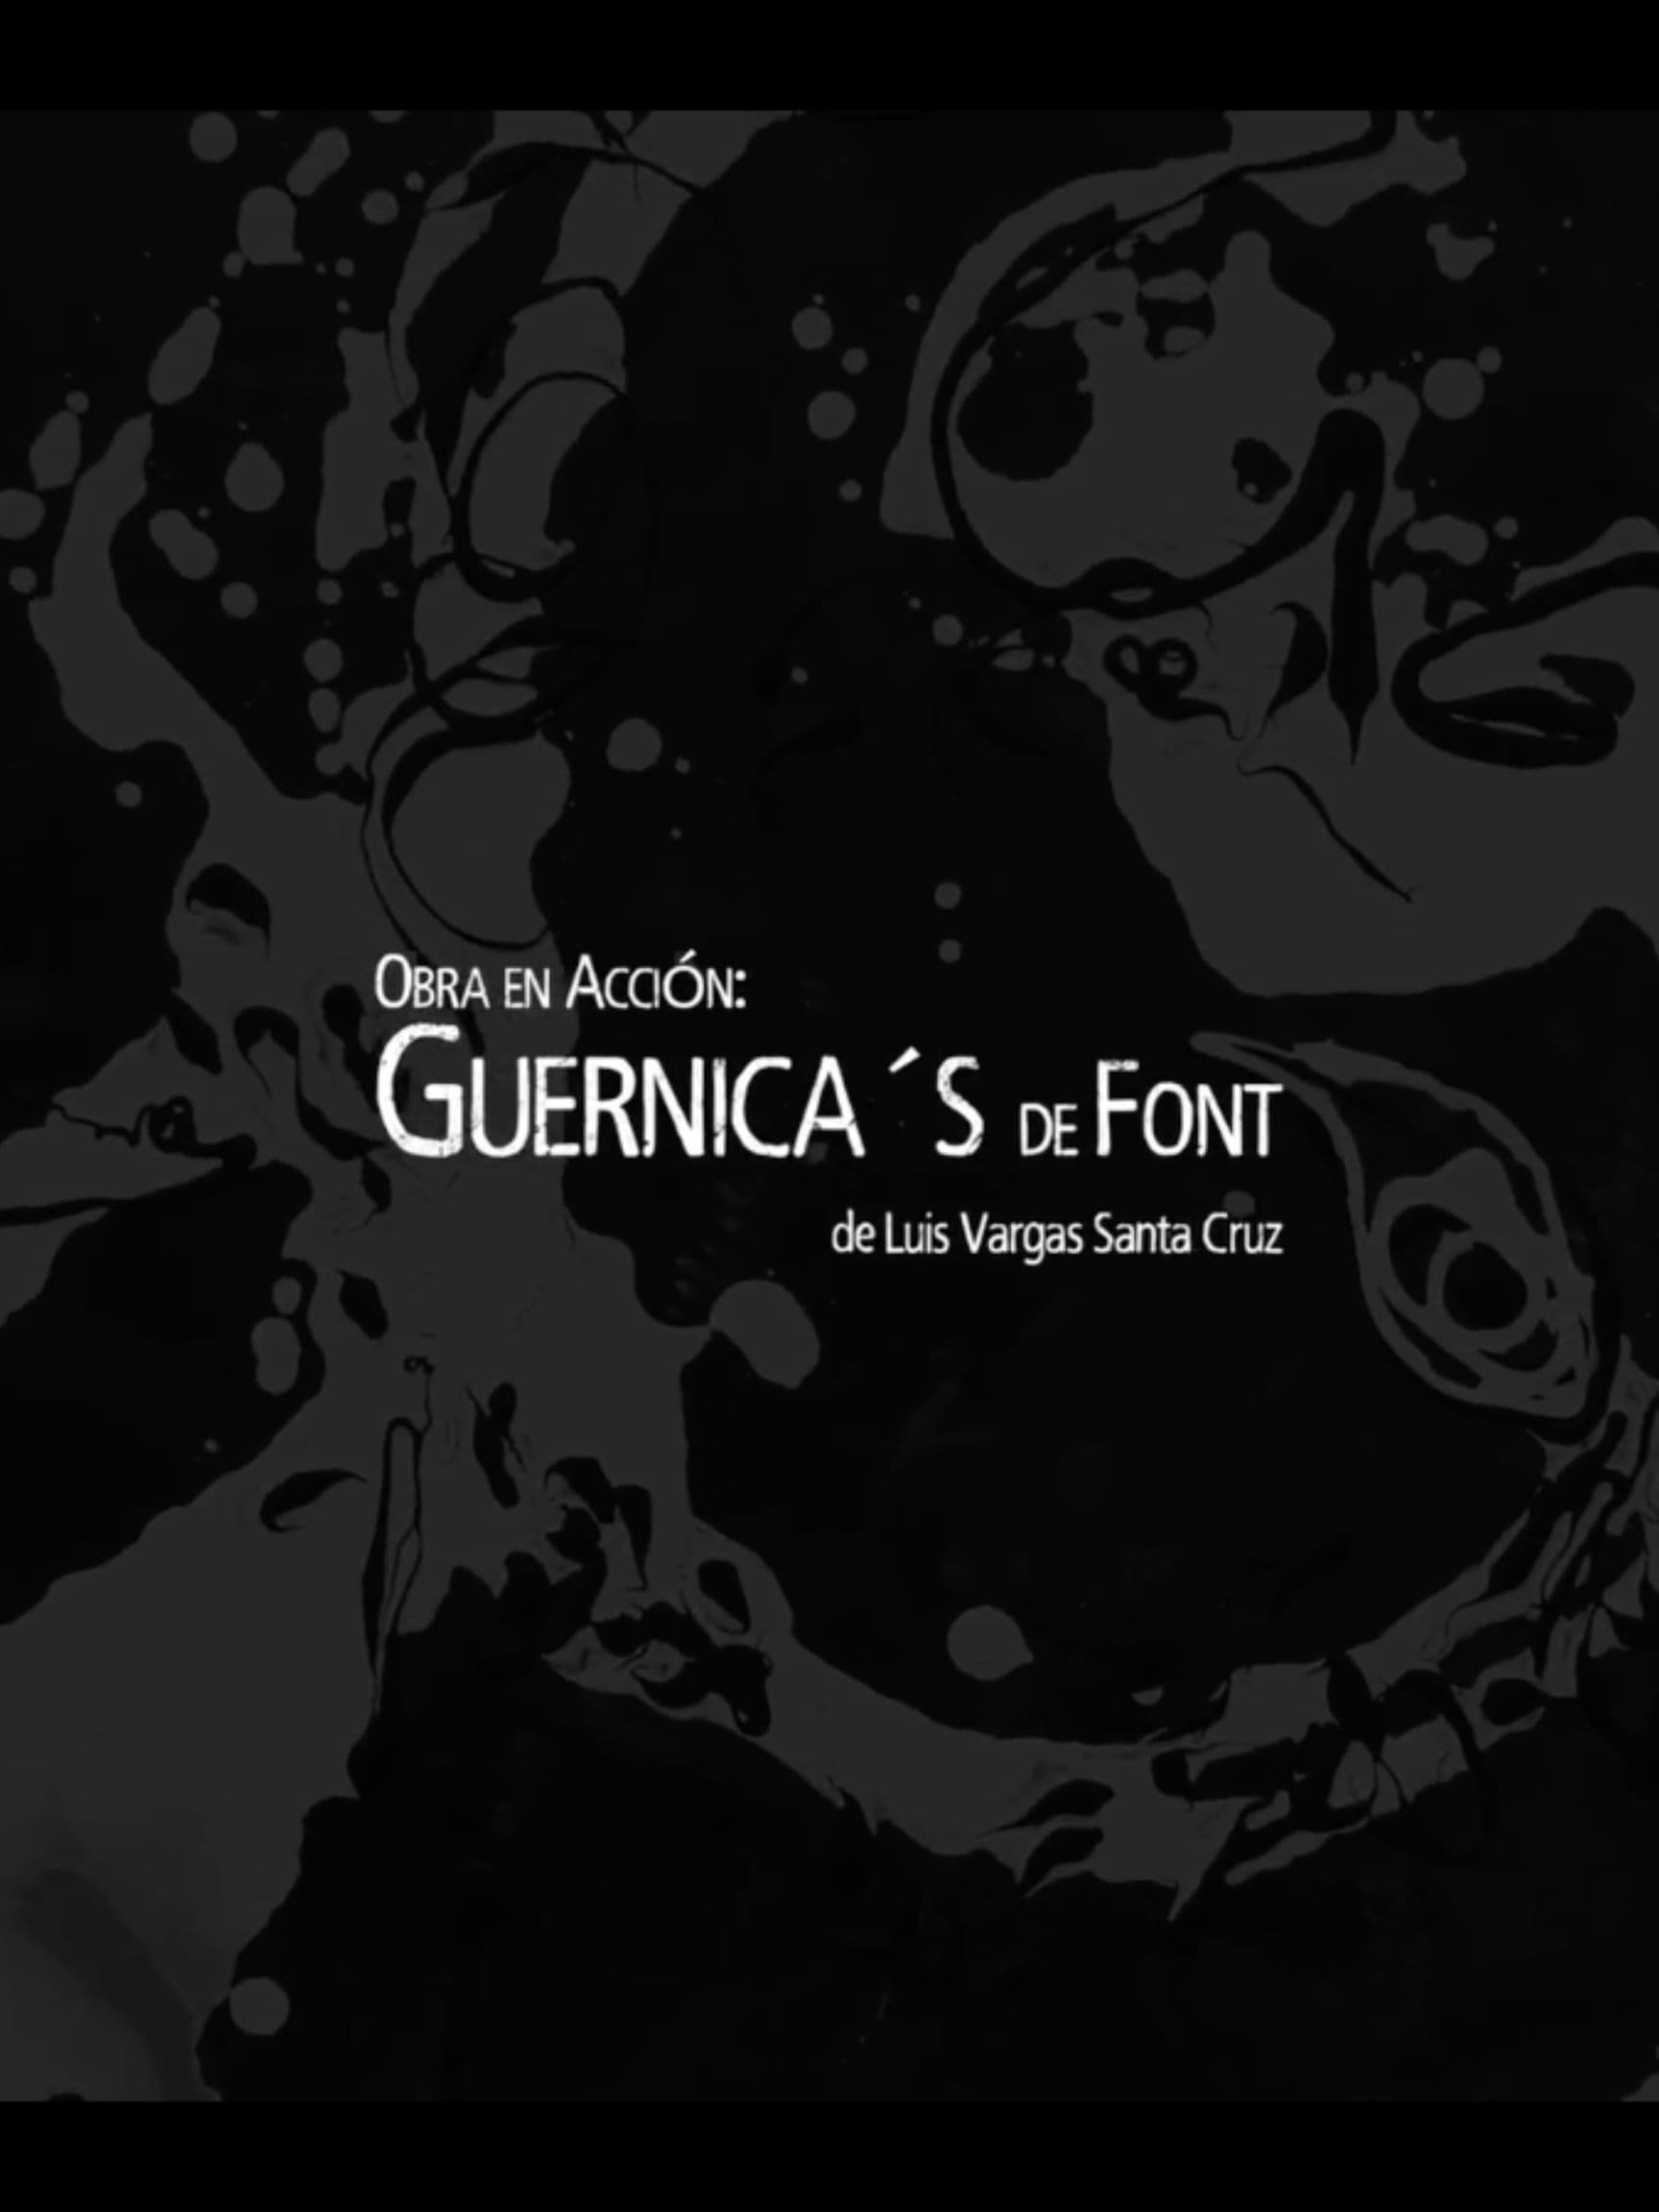 Work in action: Guernica's de Font